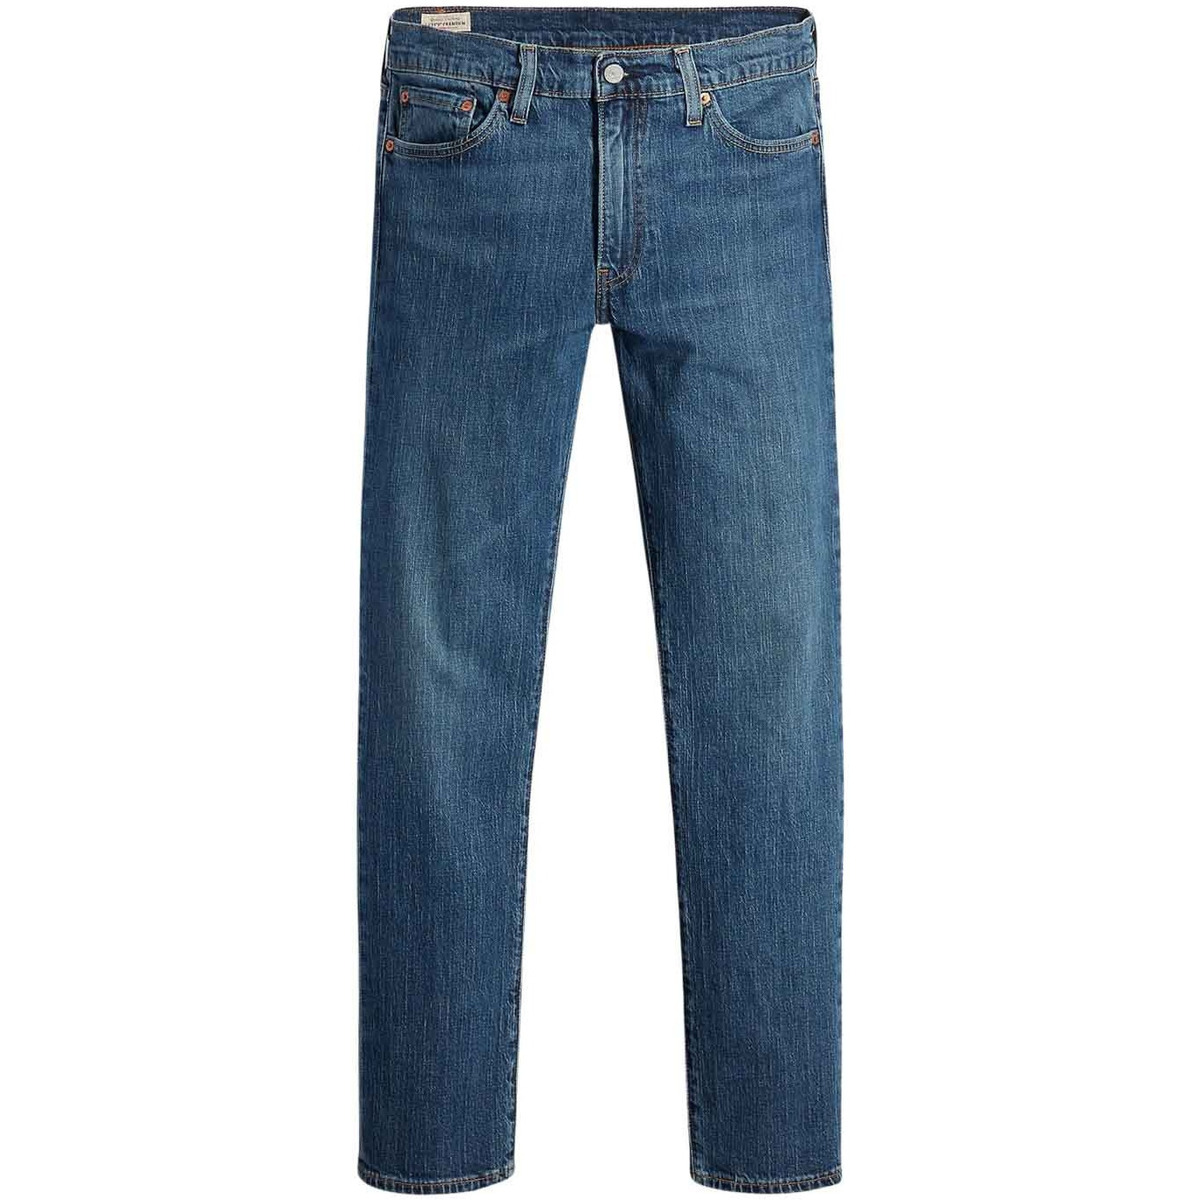 Textiel Heren Jeans Levi's  Blauw